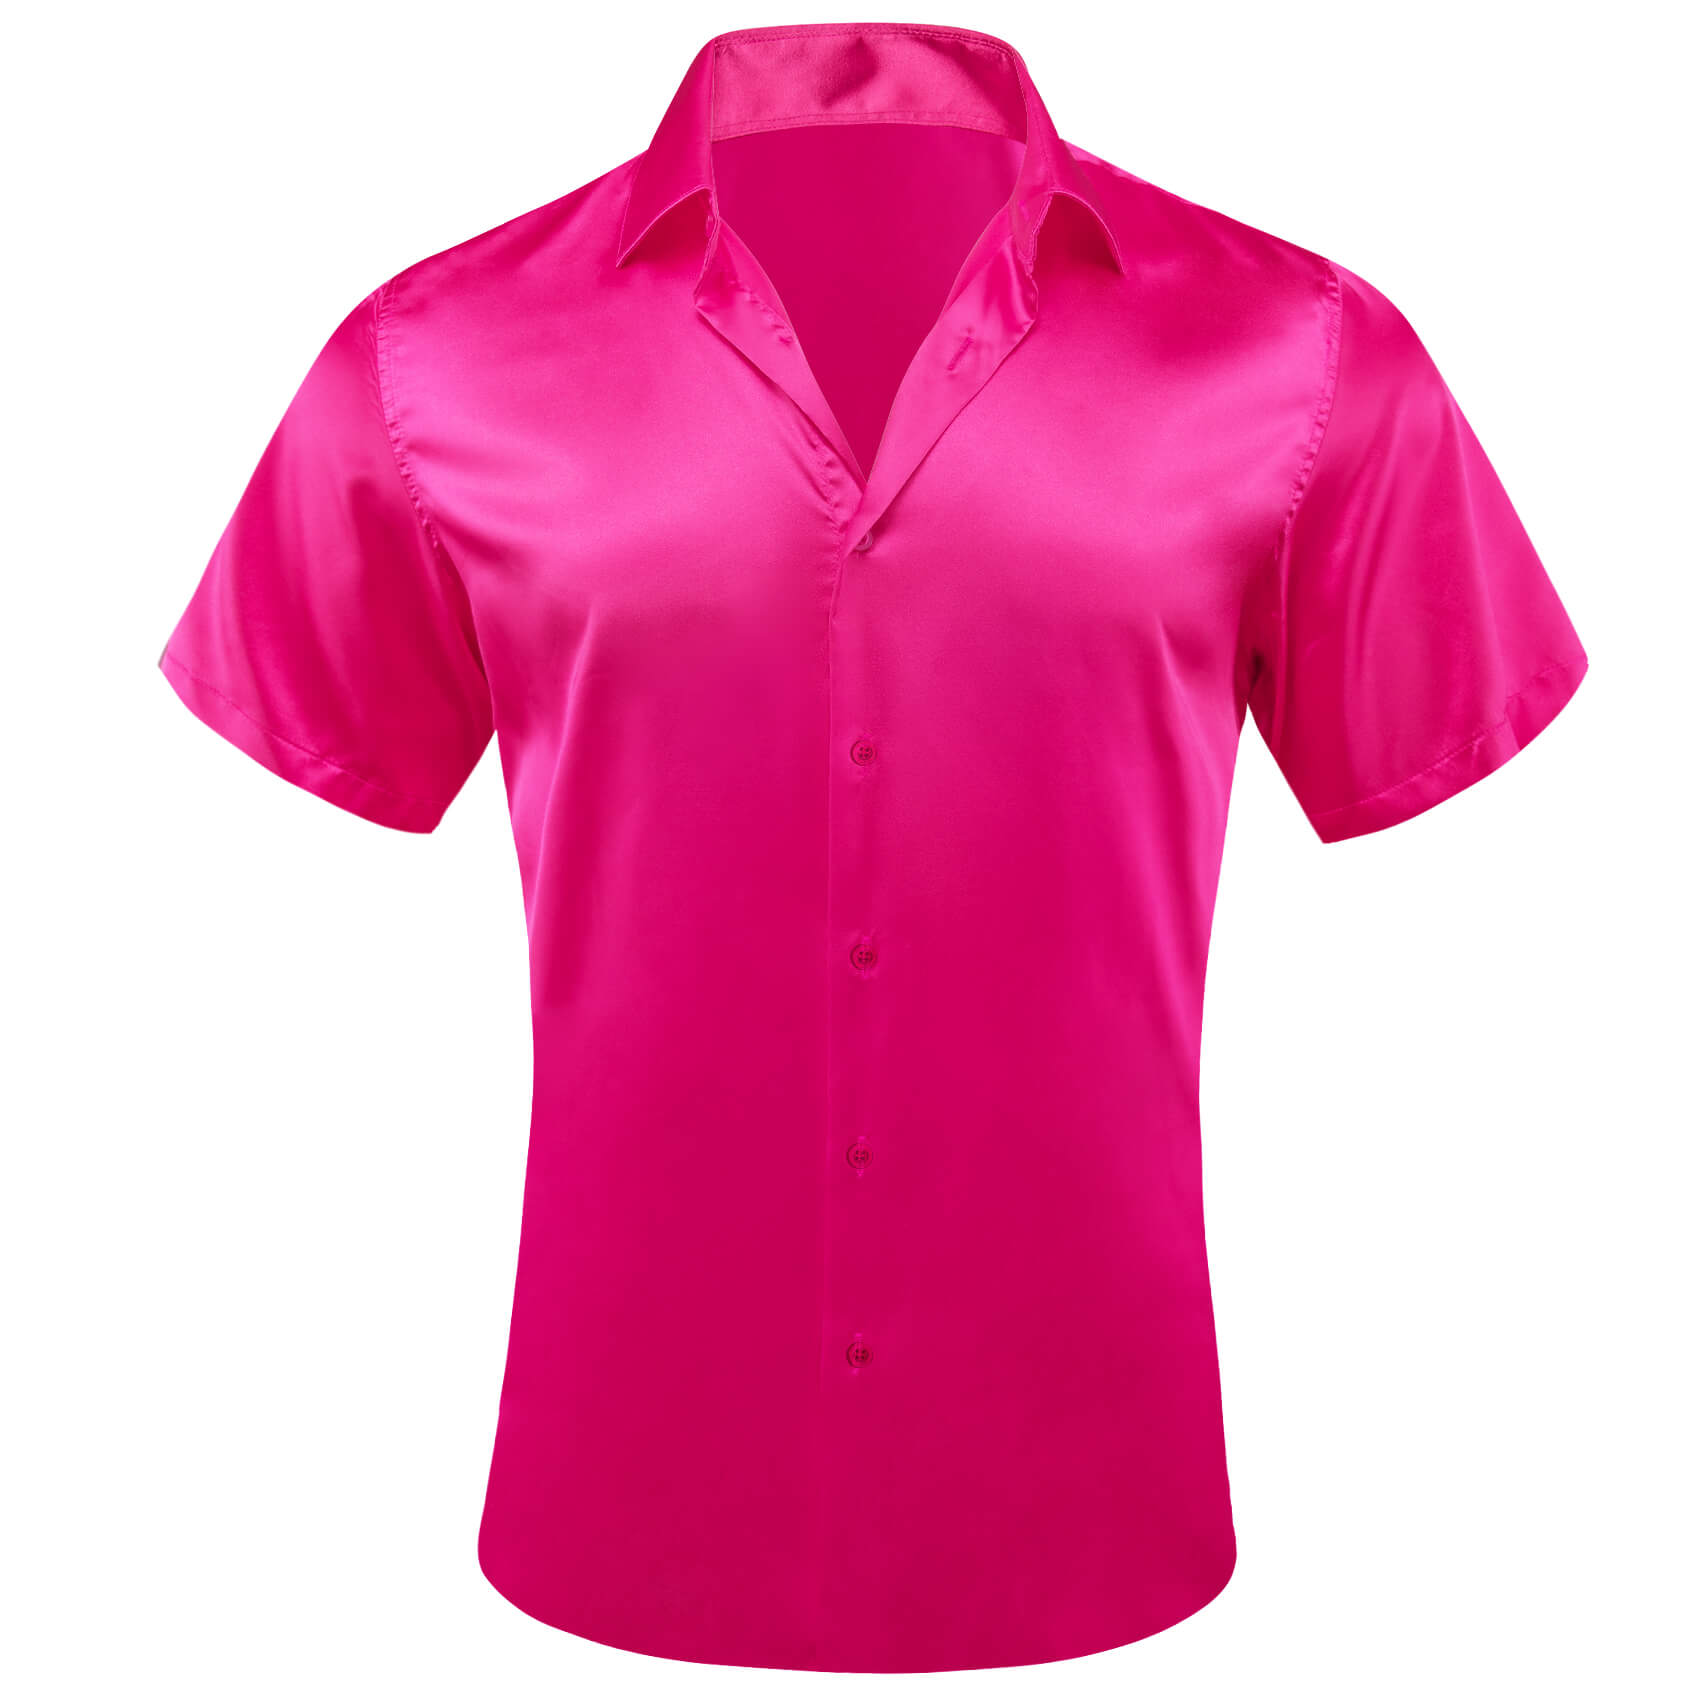 barry wang  hot pink shorts Shirt Sleeve Shirt Solid DeepPink Shirt